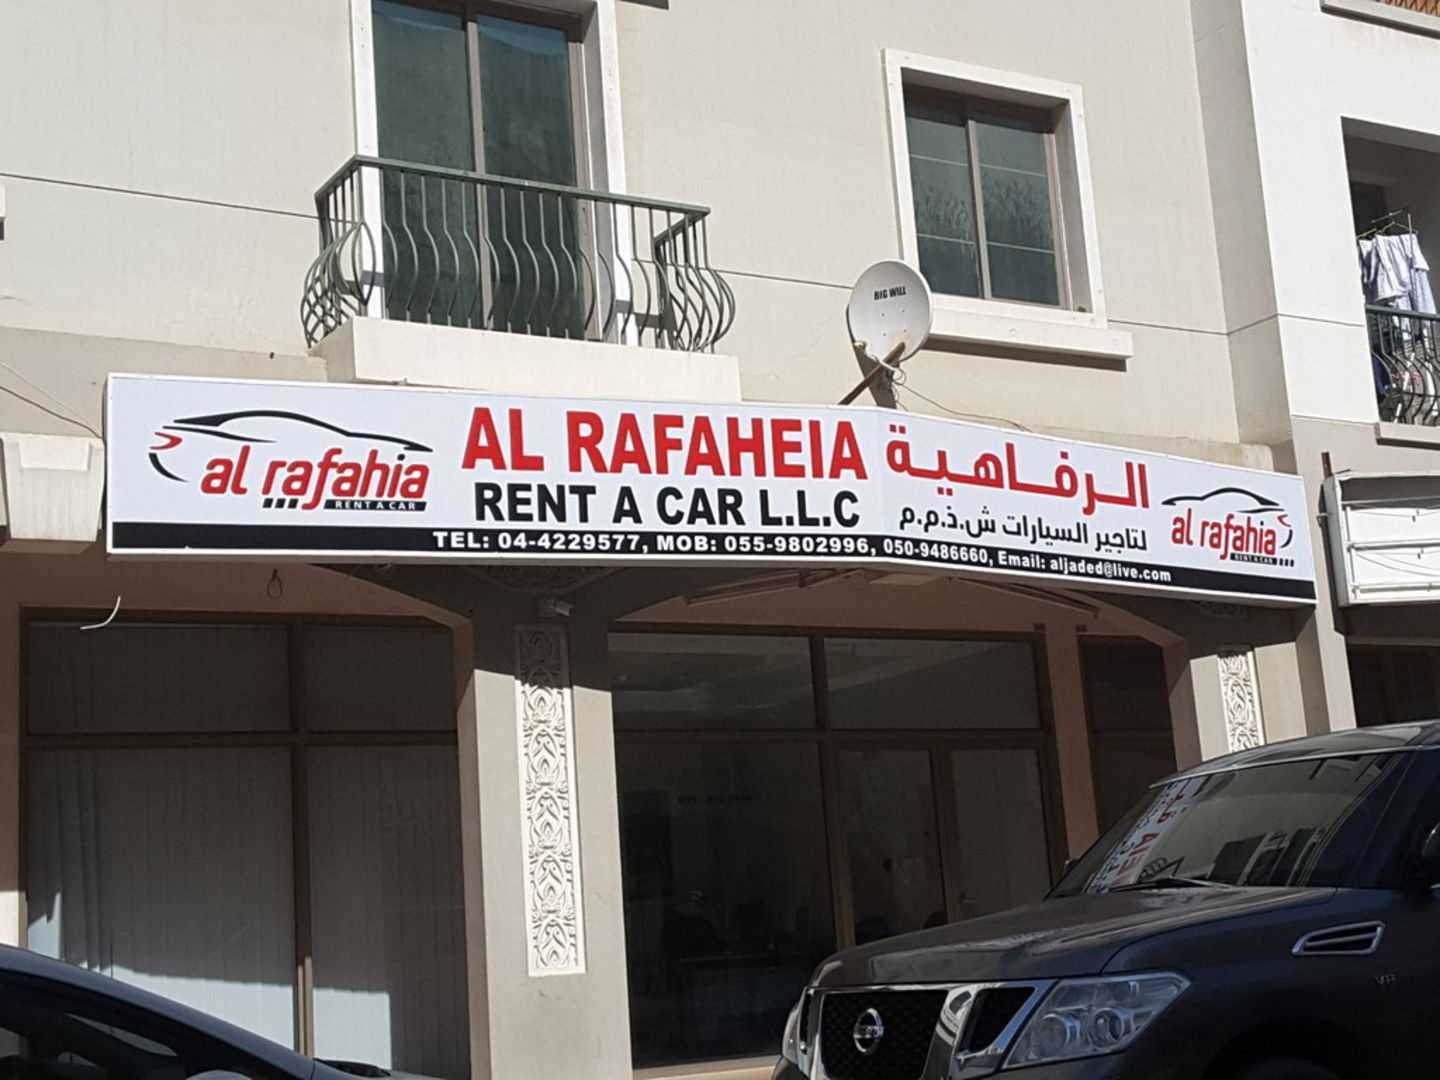 Al Rafdein Rent A Car LLC